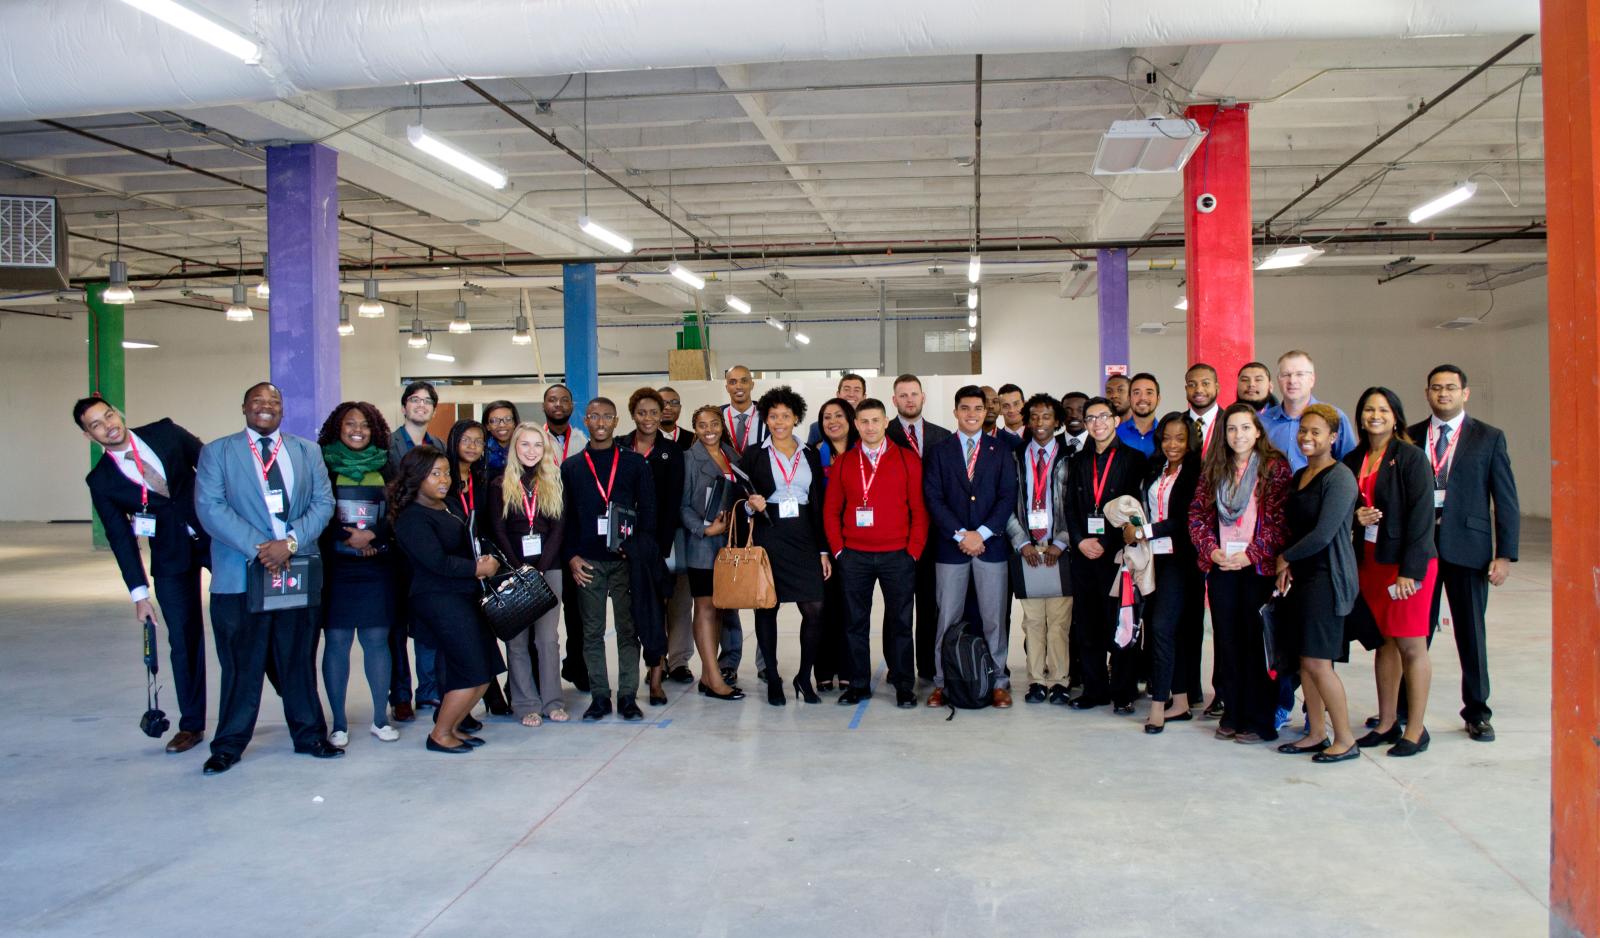 2015 Scholars Program participants